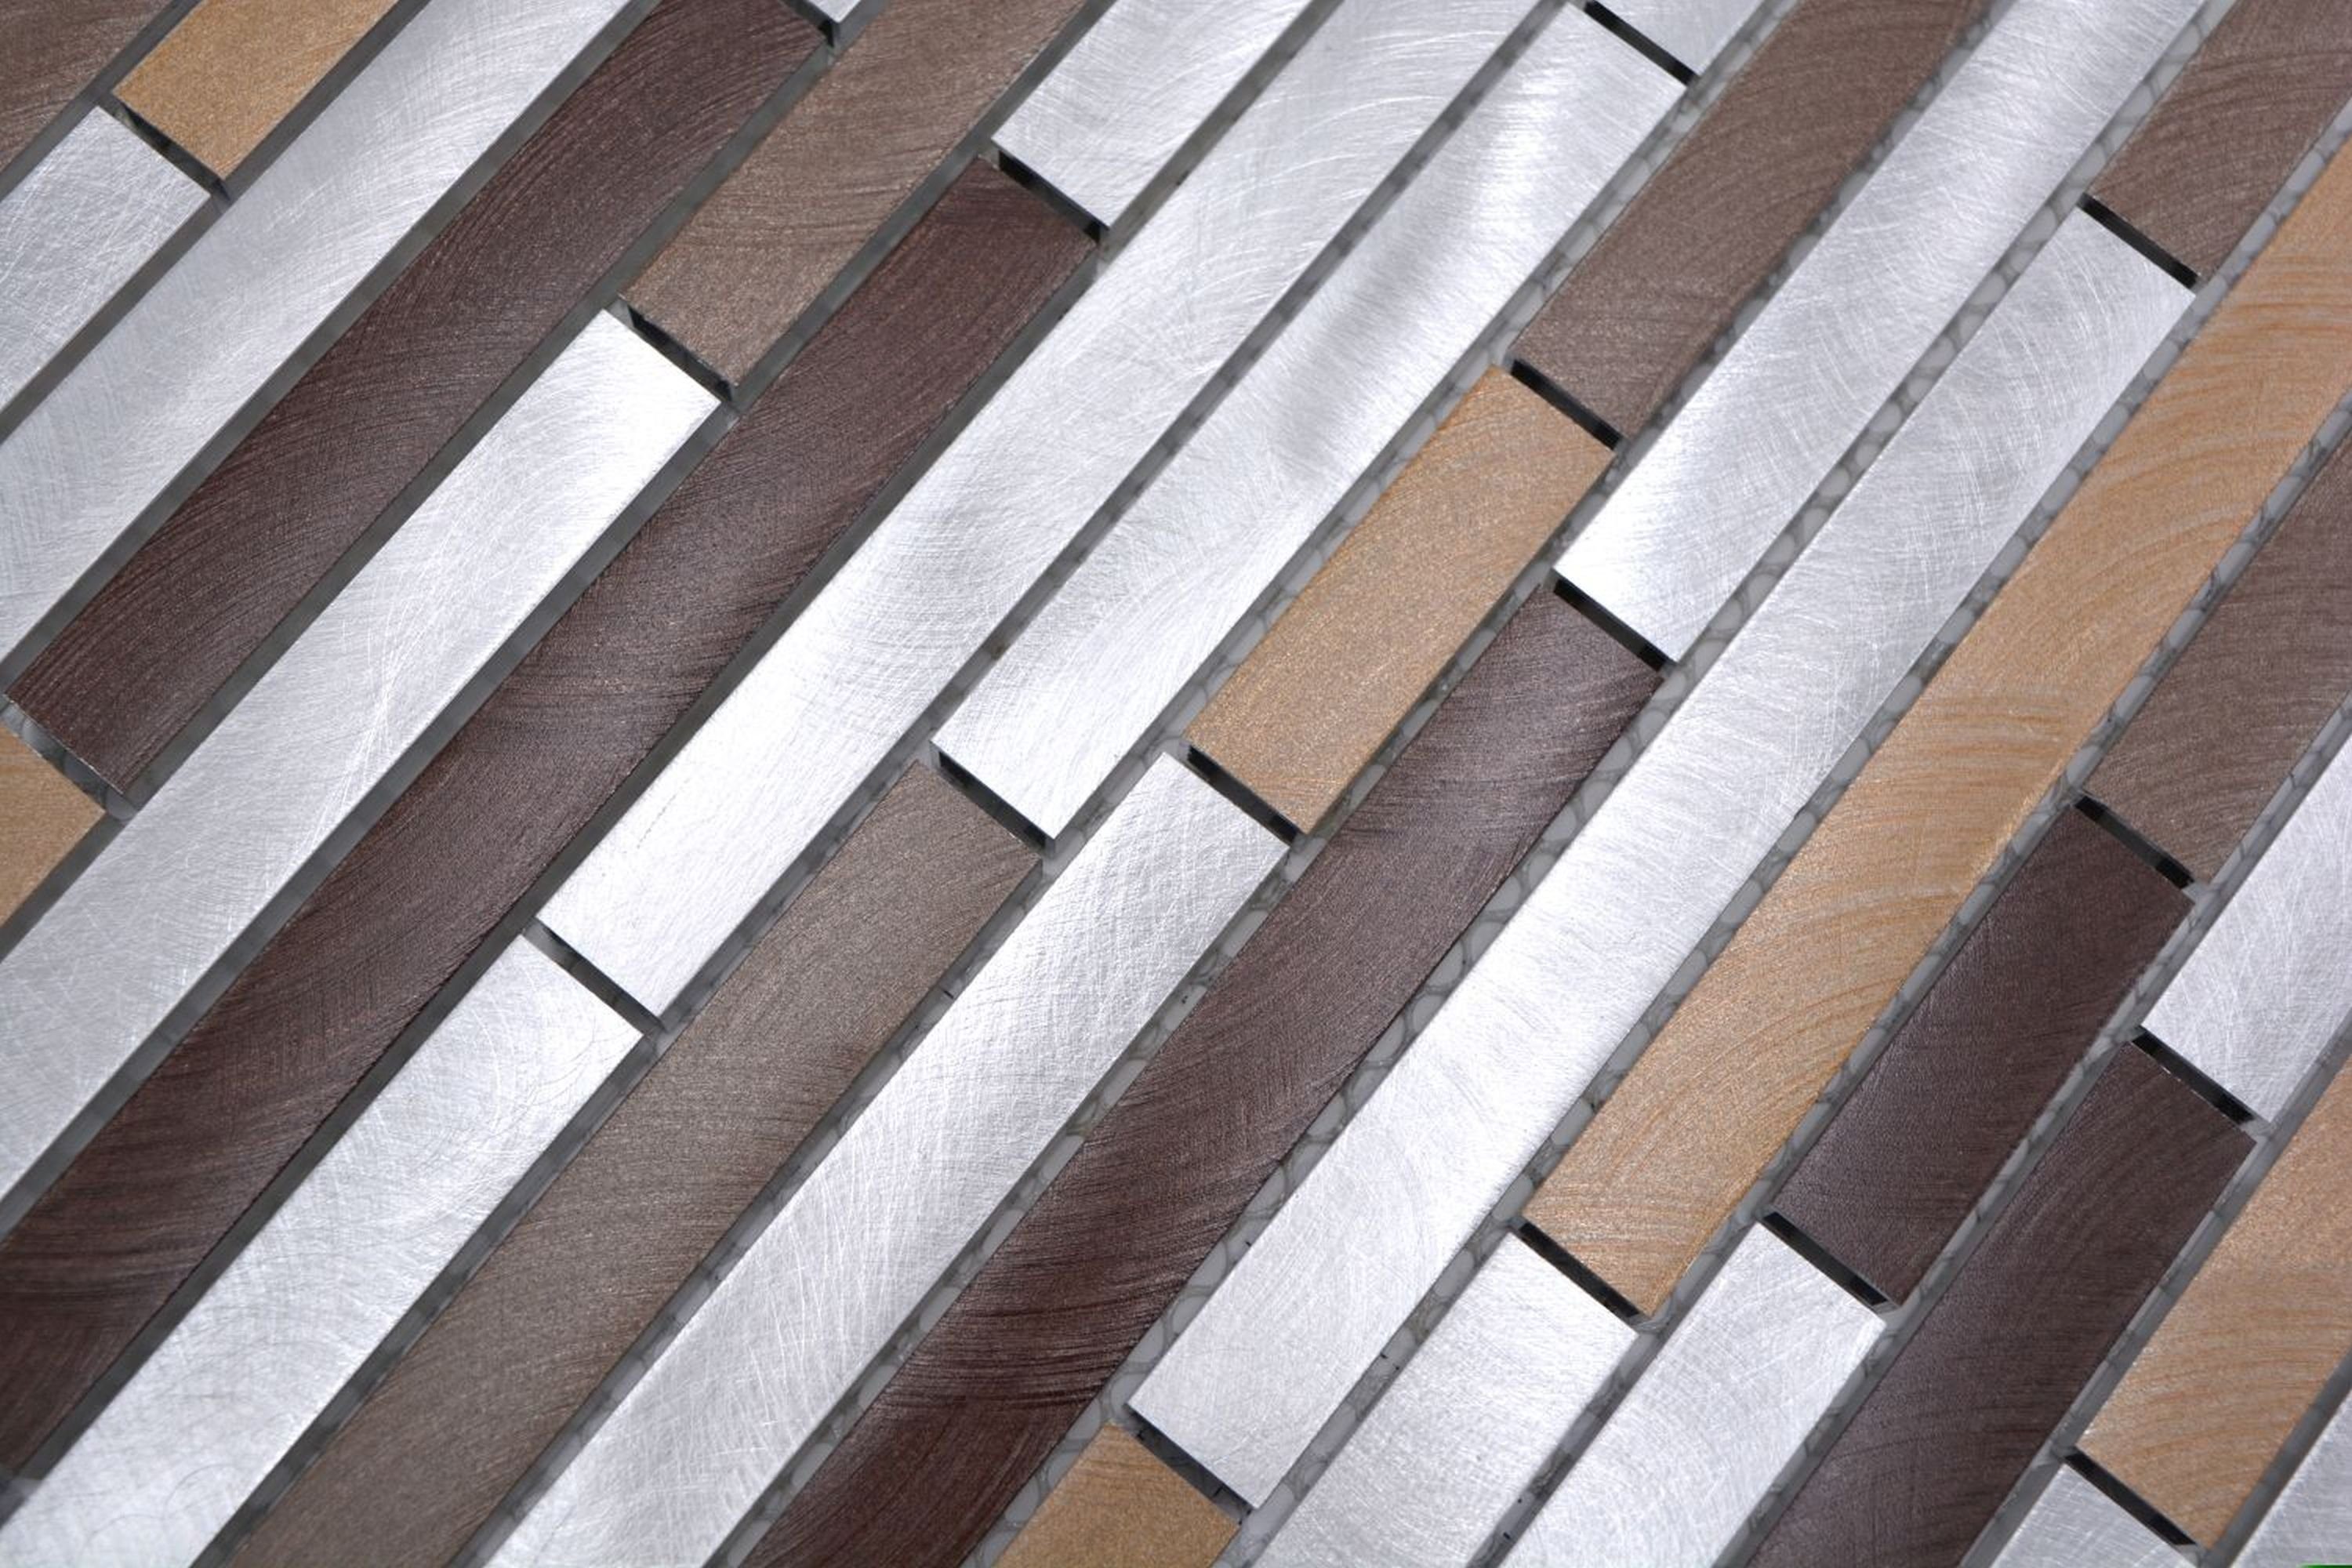 Mosani Mosaikfliesen Mosaik kupfer beige braun Fliese Küchenwand Aluminium Verbund